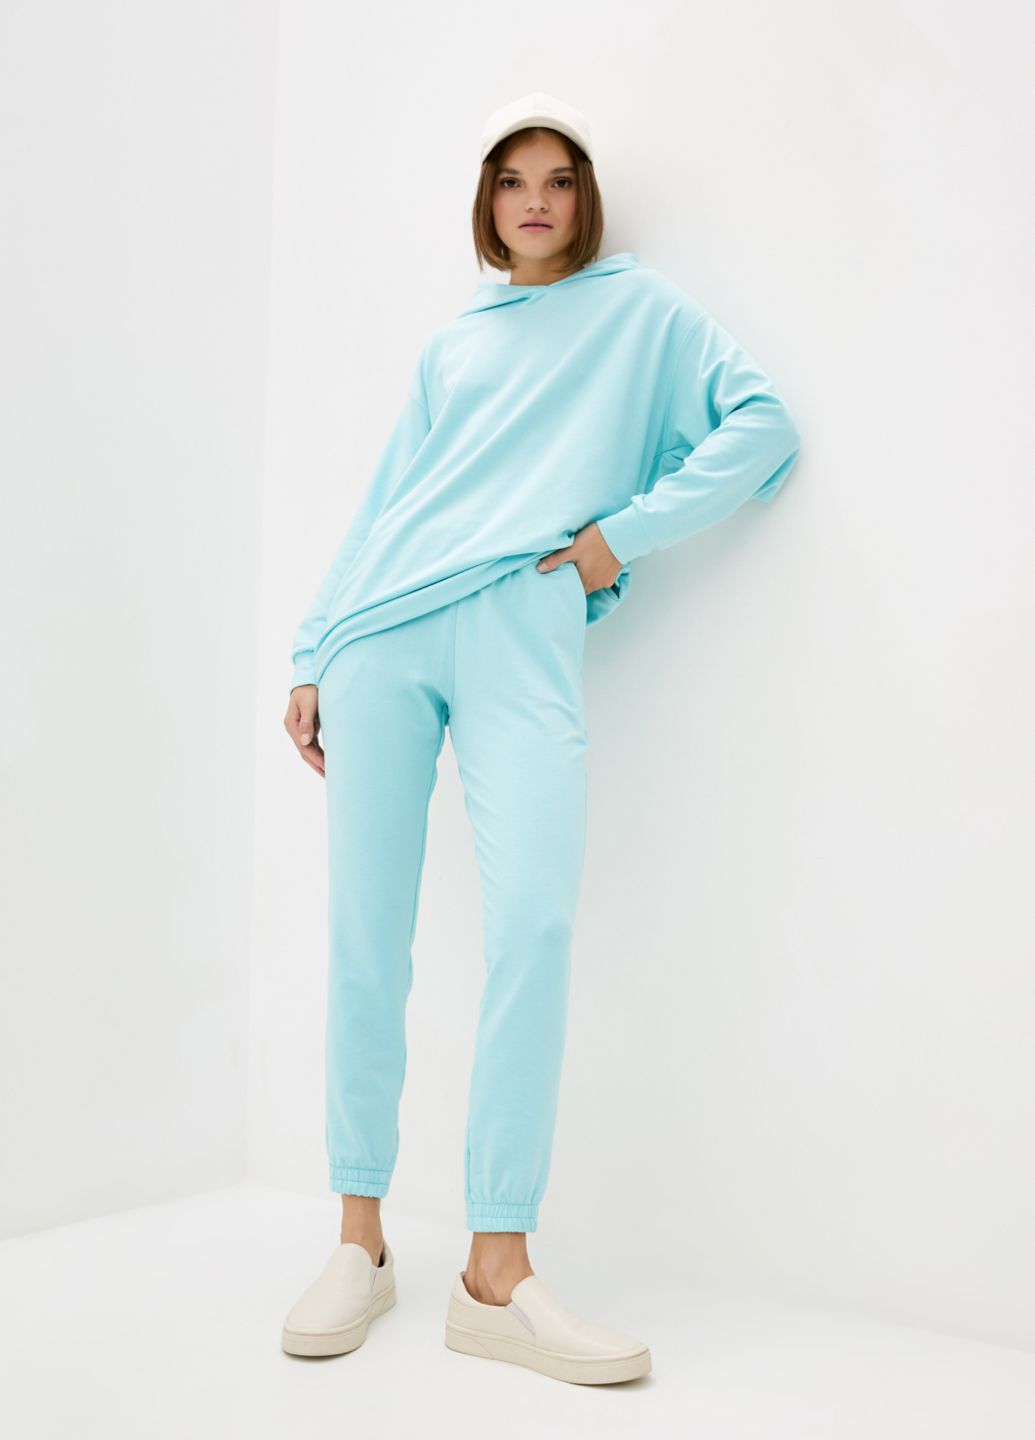 Купить Спортивные штаны женские Merlini Латина 600000015 - Голубой, 42-44 в интернет-магазине